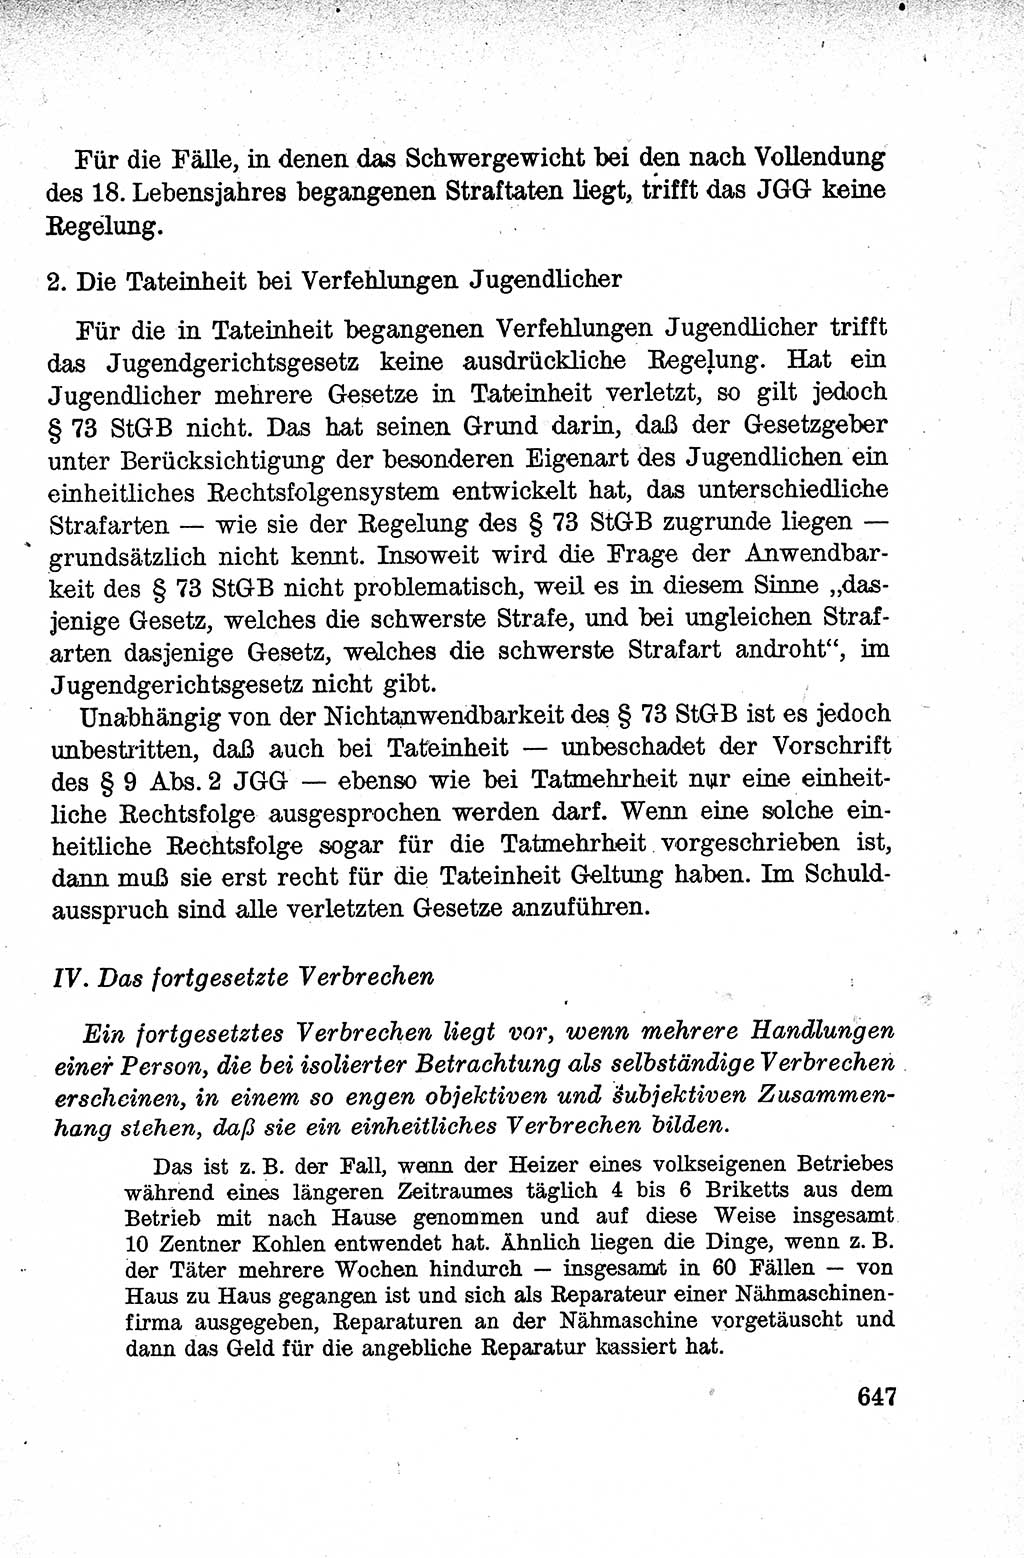 Lehrbuch des Strafrechts der Deutschen Demokratischen Republik (DDR), Allgemeiner Teil 1959, Seite 647 (Lb. Strafr. DDR AT 1959, S. 647)